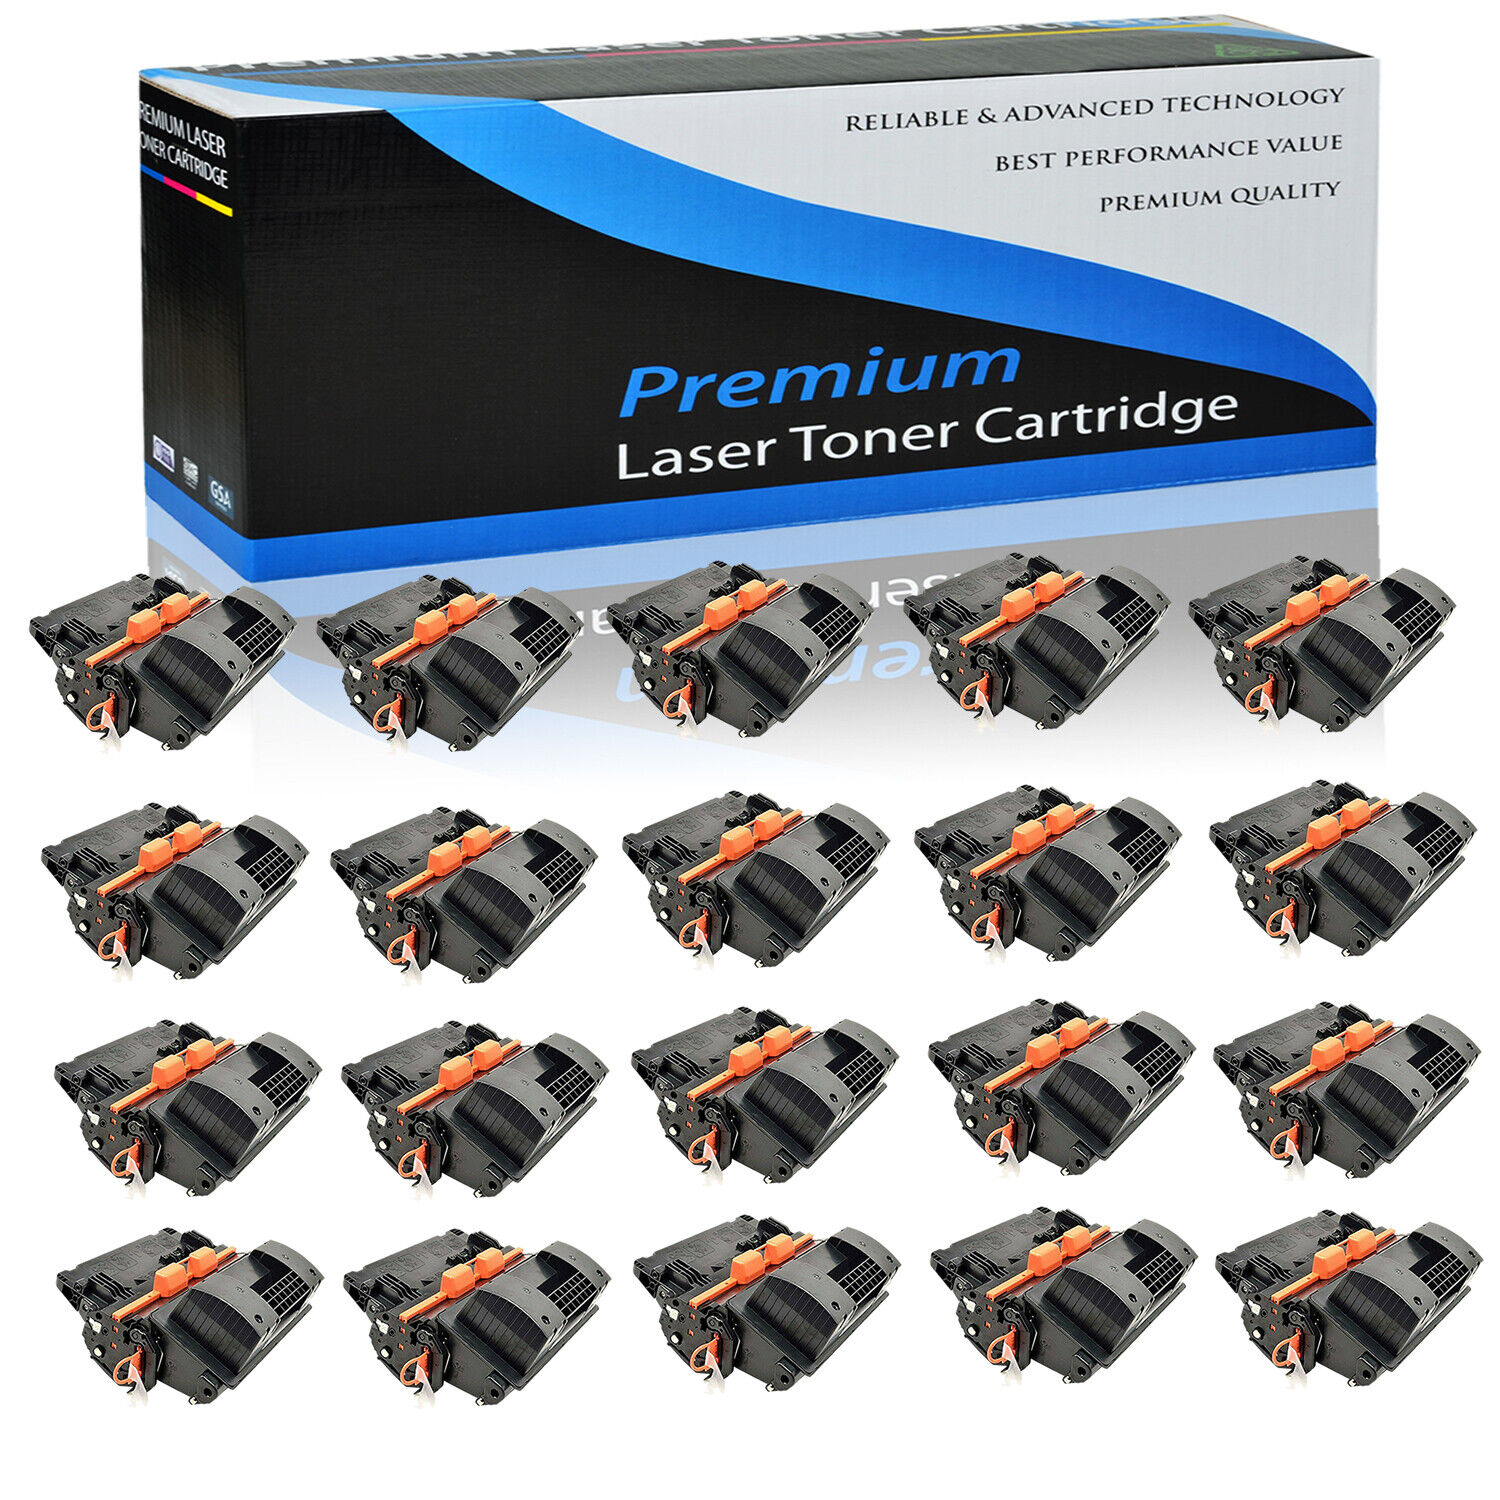 20 Pack CC364A 64A Toner Cartridge for HP LaserJet P4014dn P4014n P4015dn P4015n